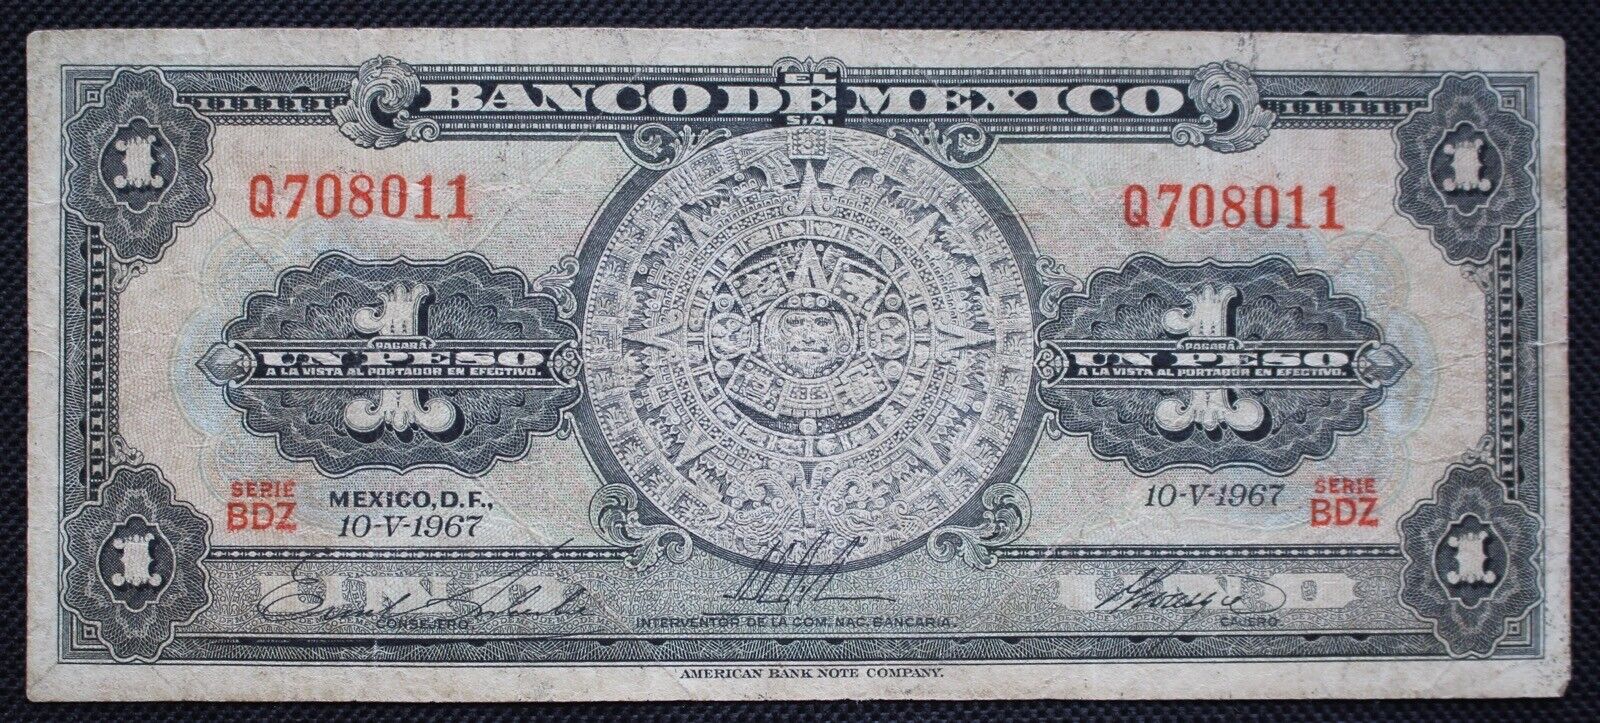 1967 BANCO DE MEXICO UN PESO BANK NOTE - Series BDZ Q708011 